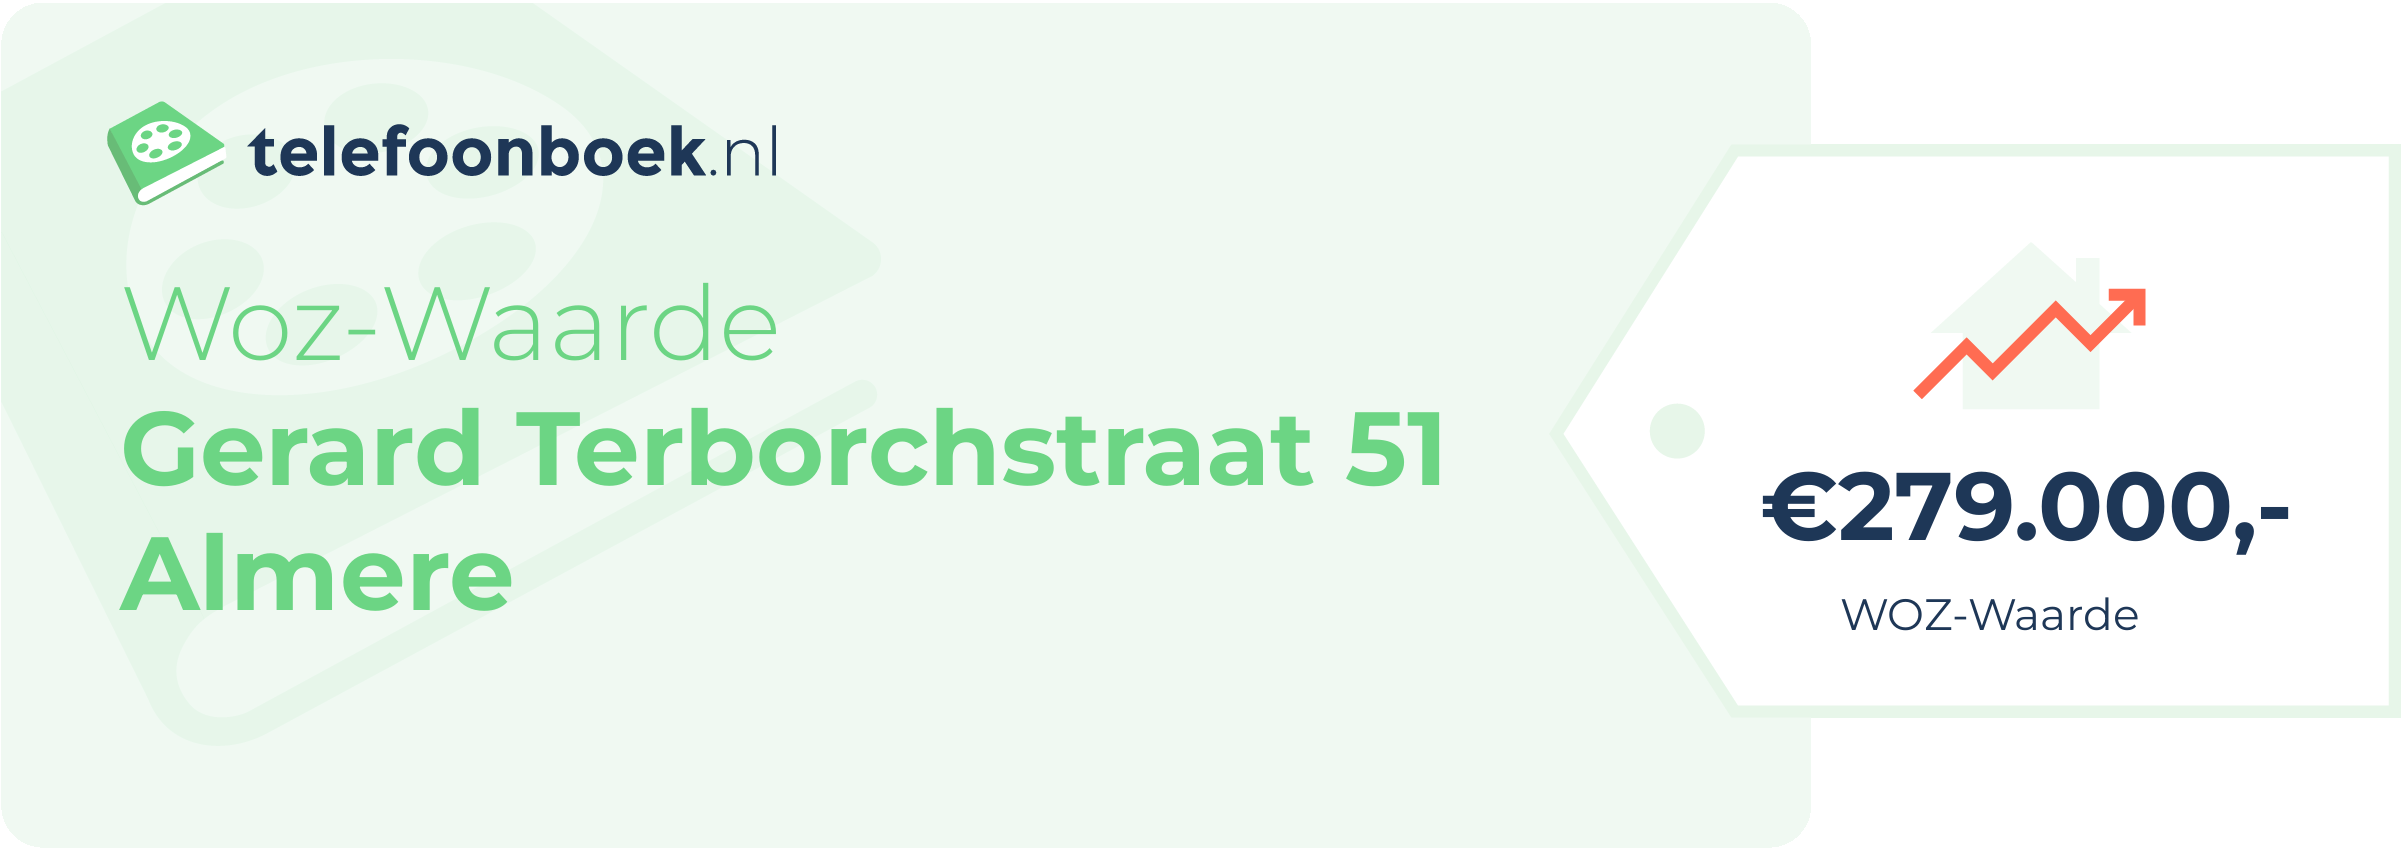 WOZ-waarde Gerard Terborchstraat 51 Almere